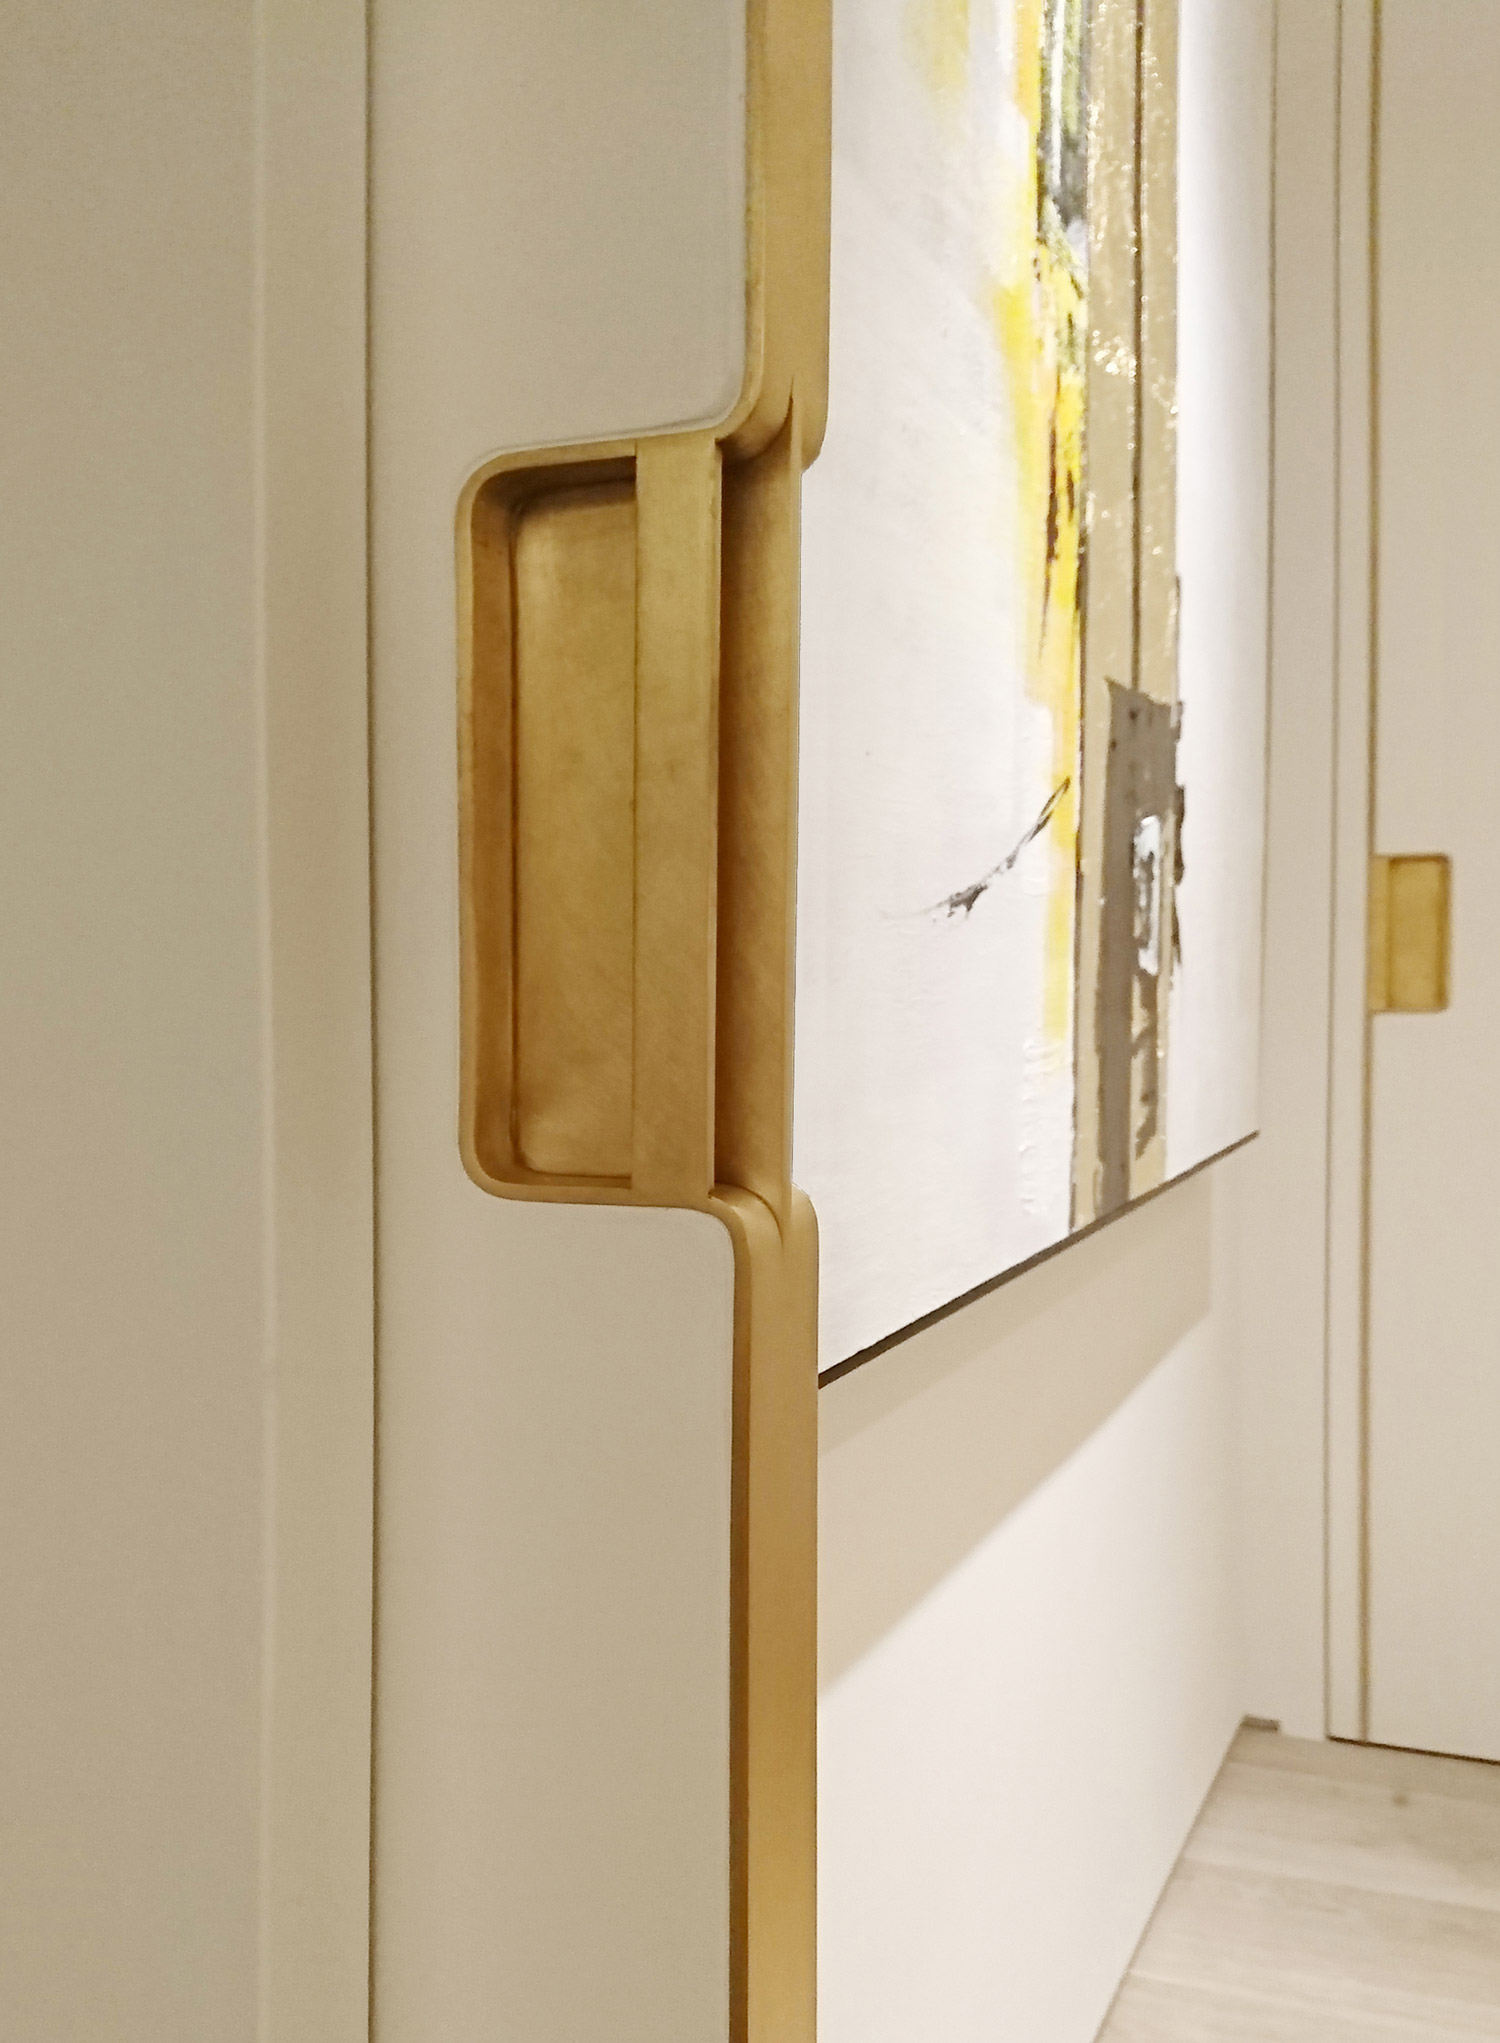 Brass door handles by Fennite metalworks